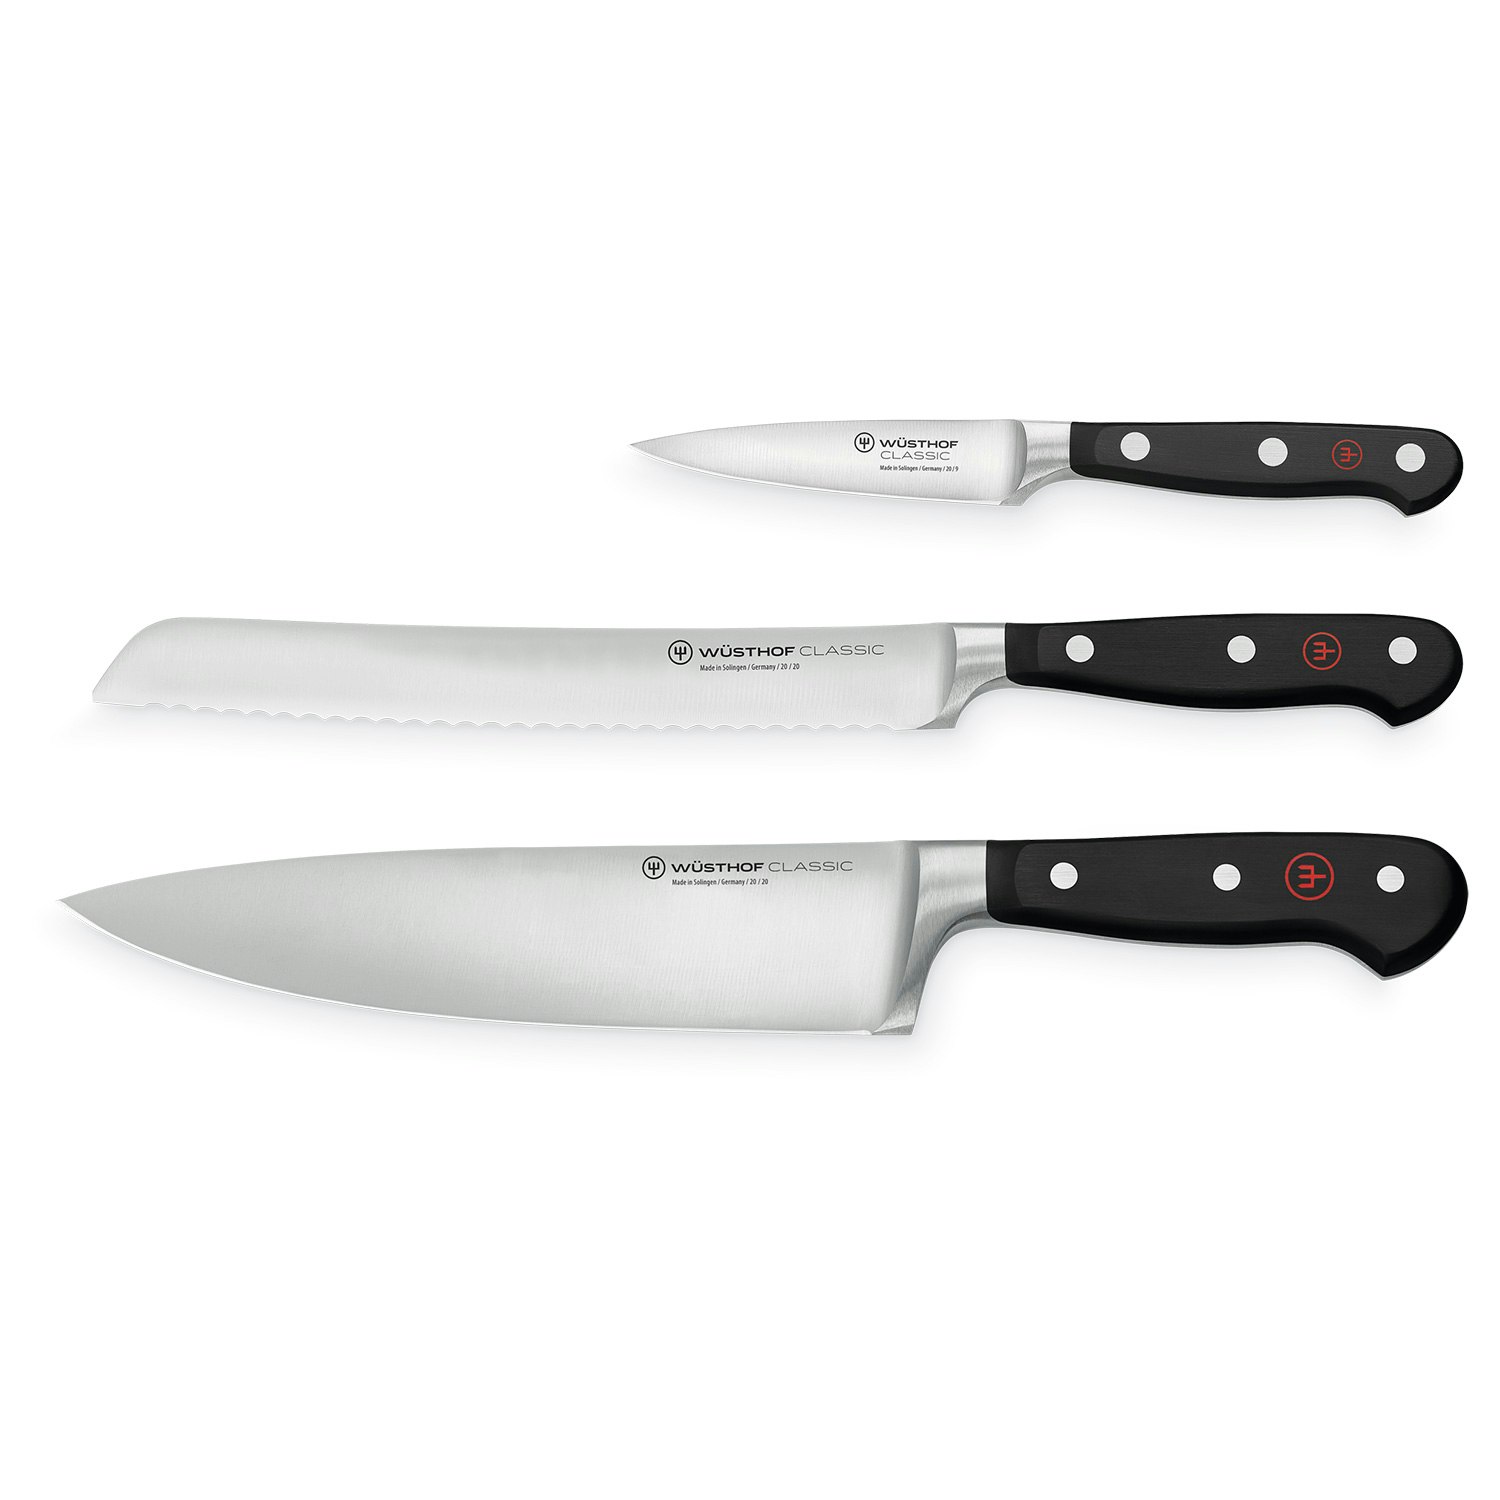 https://royaldesign.com/image/11/wusthof-classic-knife-set-3-pack-1